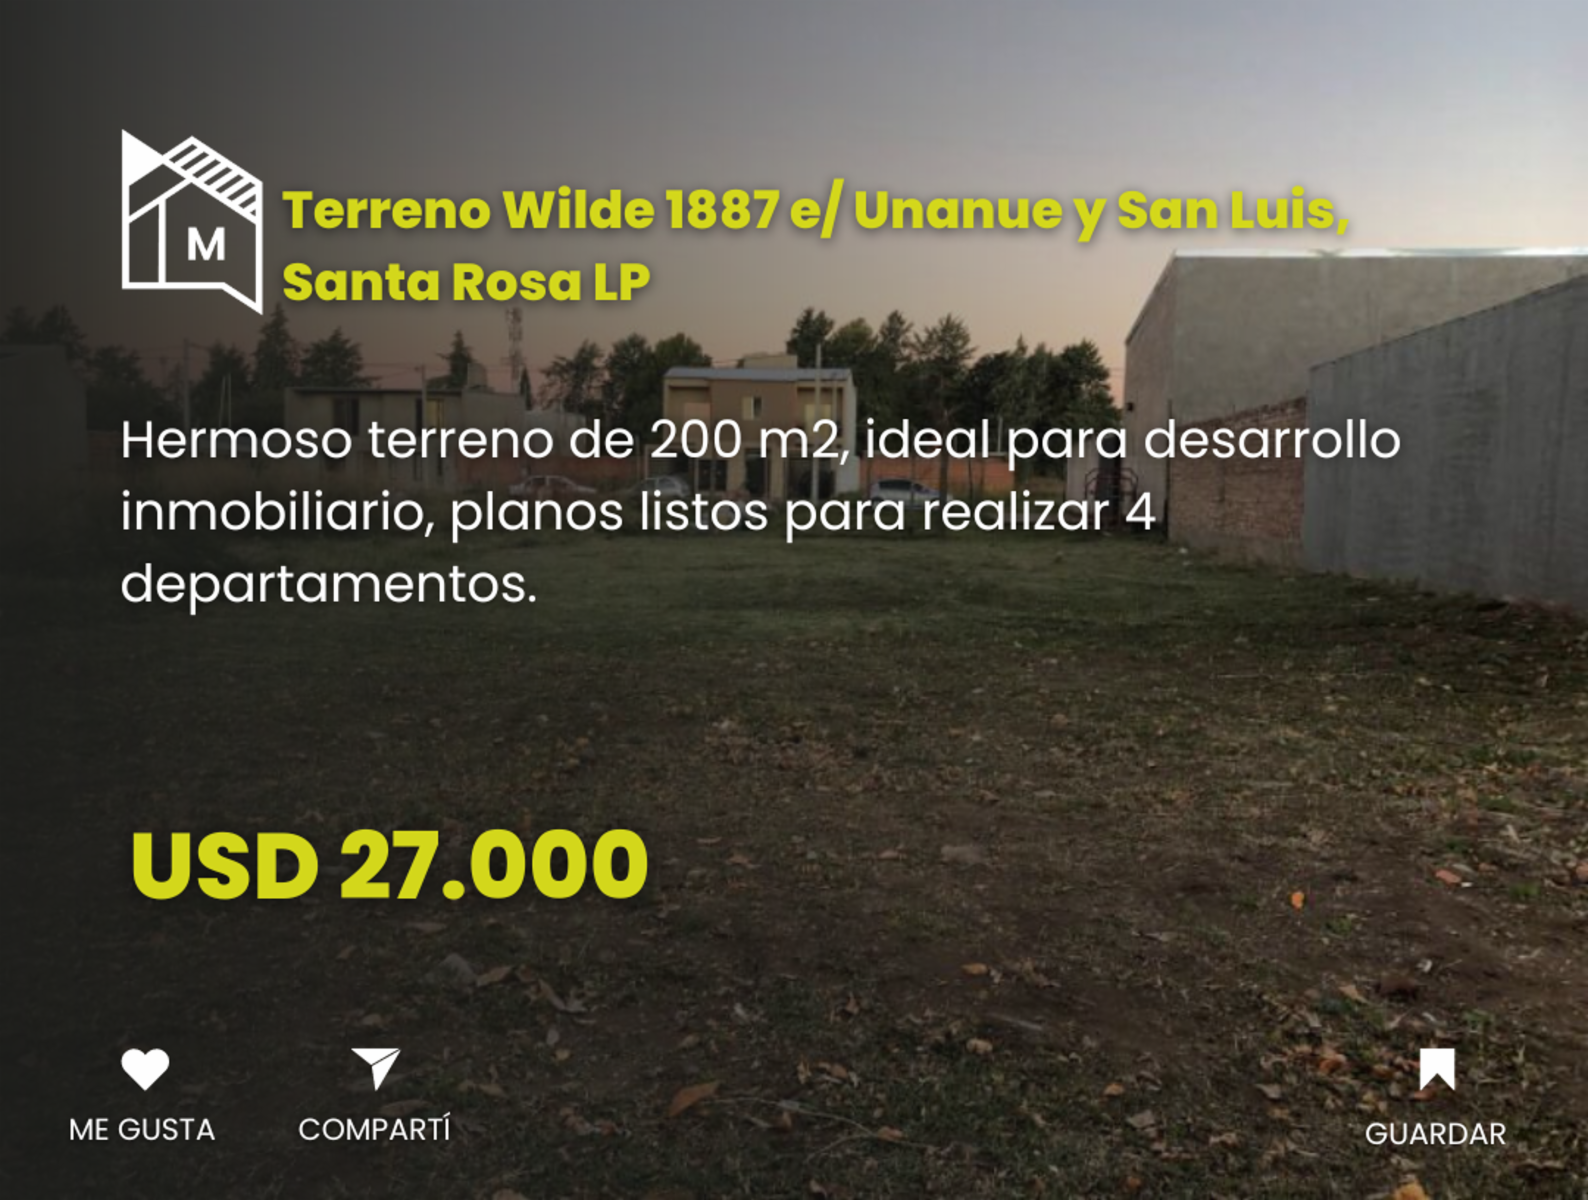 Terreno 200 m2 Wilde 1887 e/ Unanue y San Luis, Santa Rosa L